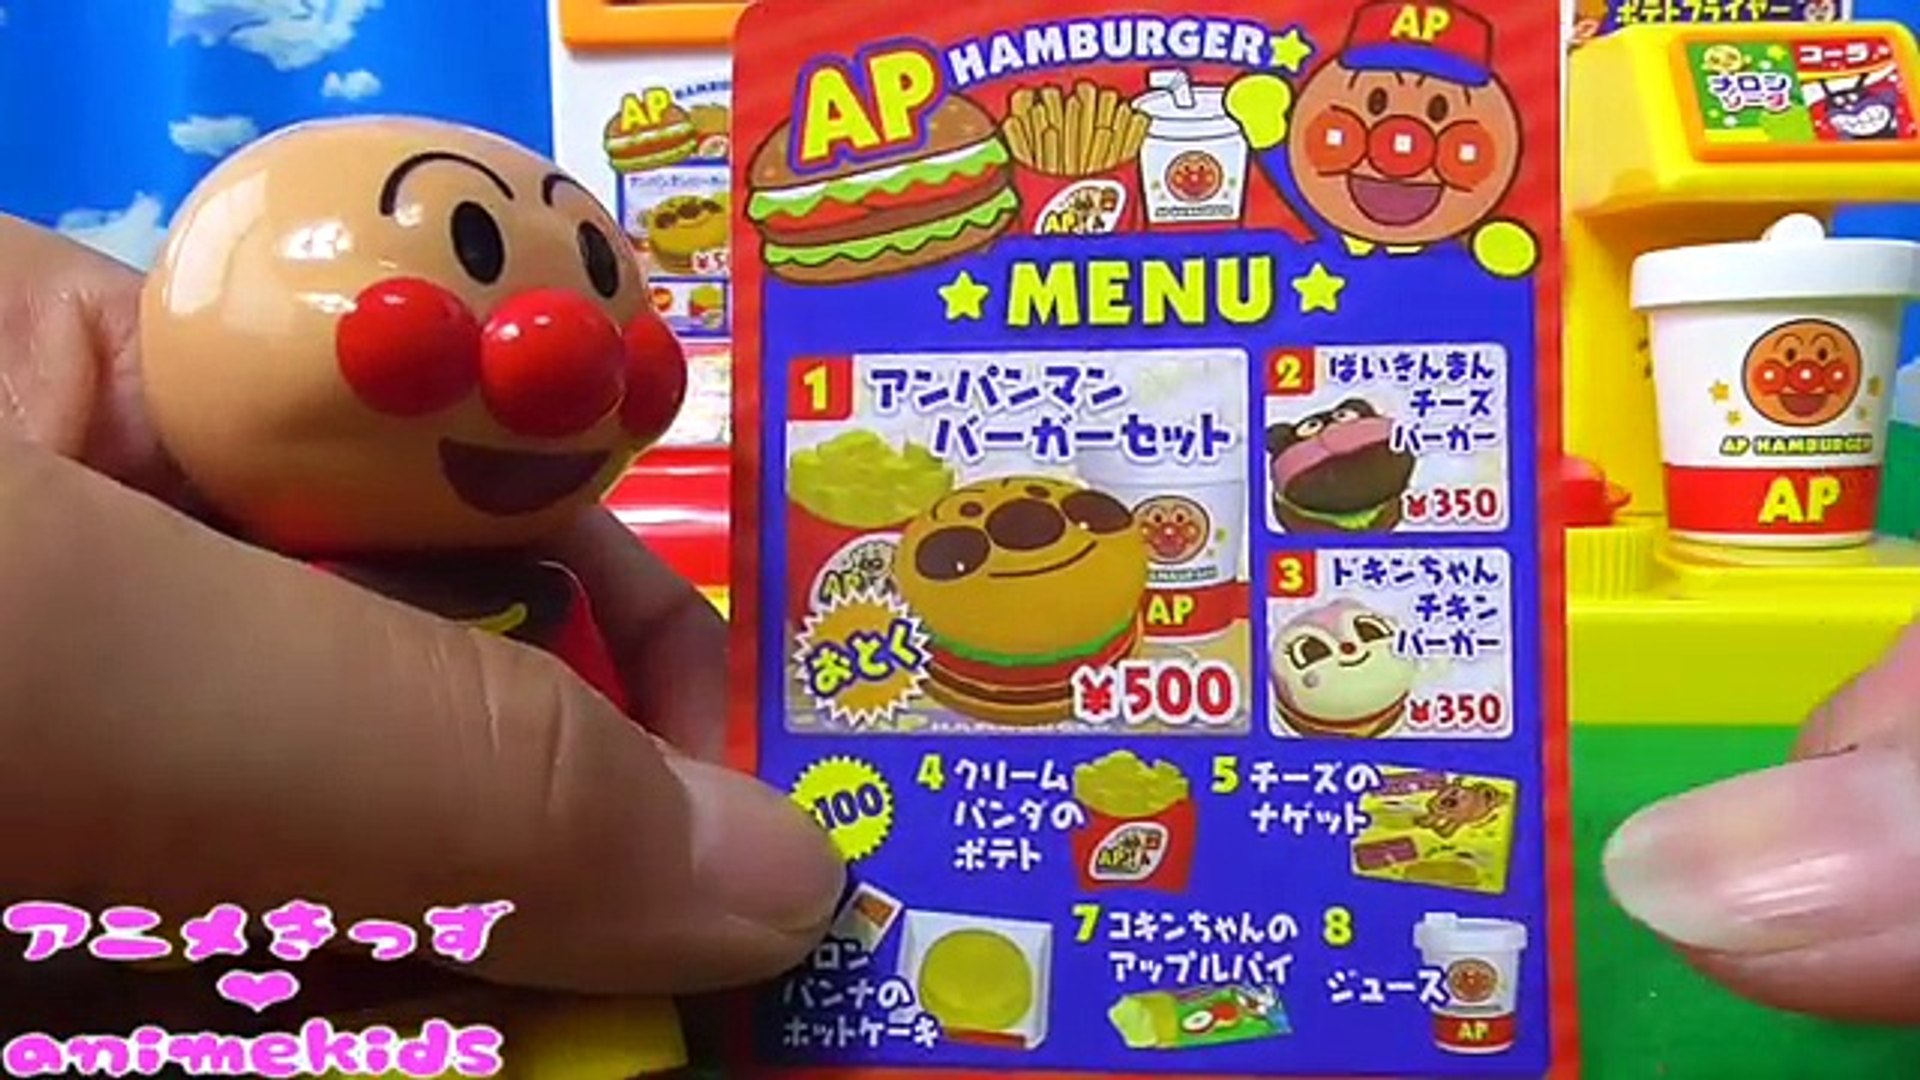 アンパンマン おもちゃ アニメ ハンバーガー屋さん お店ごっこ Animekds アニメきっず Animation Anpanman Toy Hamburger Shop 動画 Dailymotion